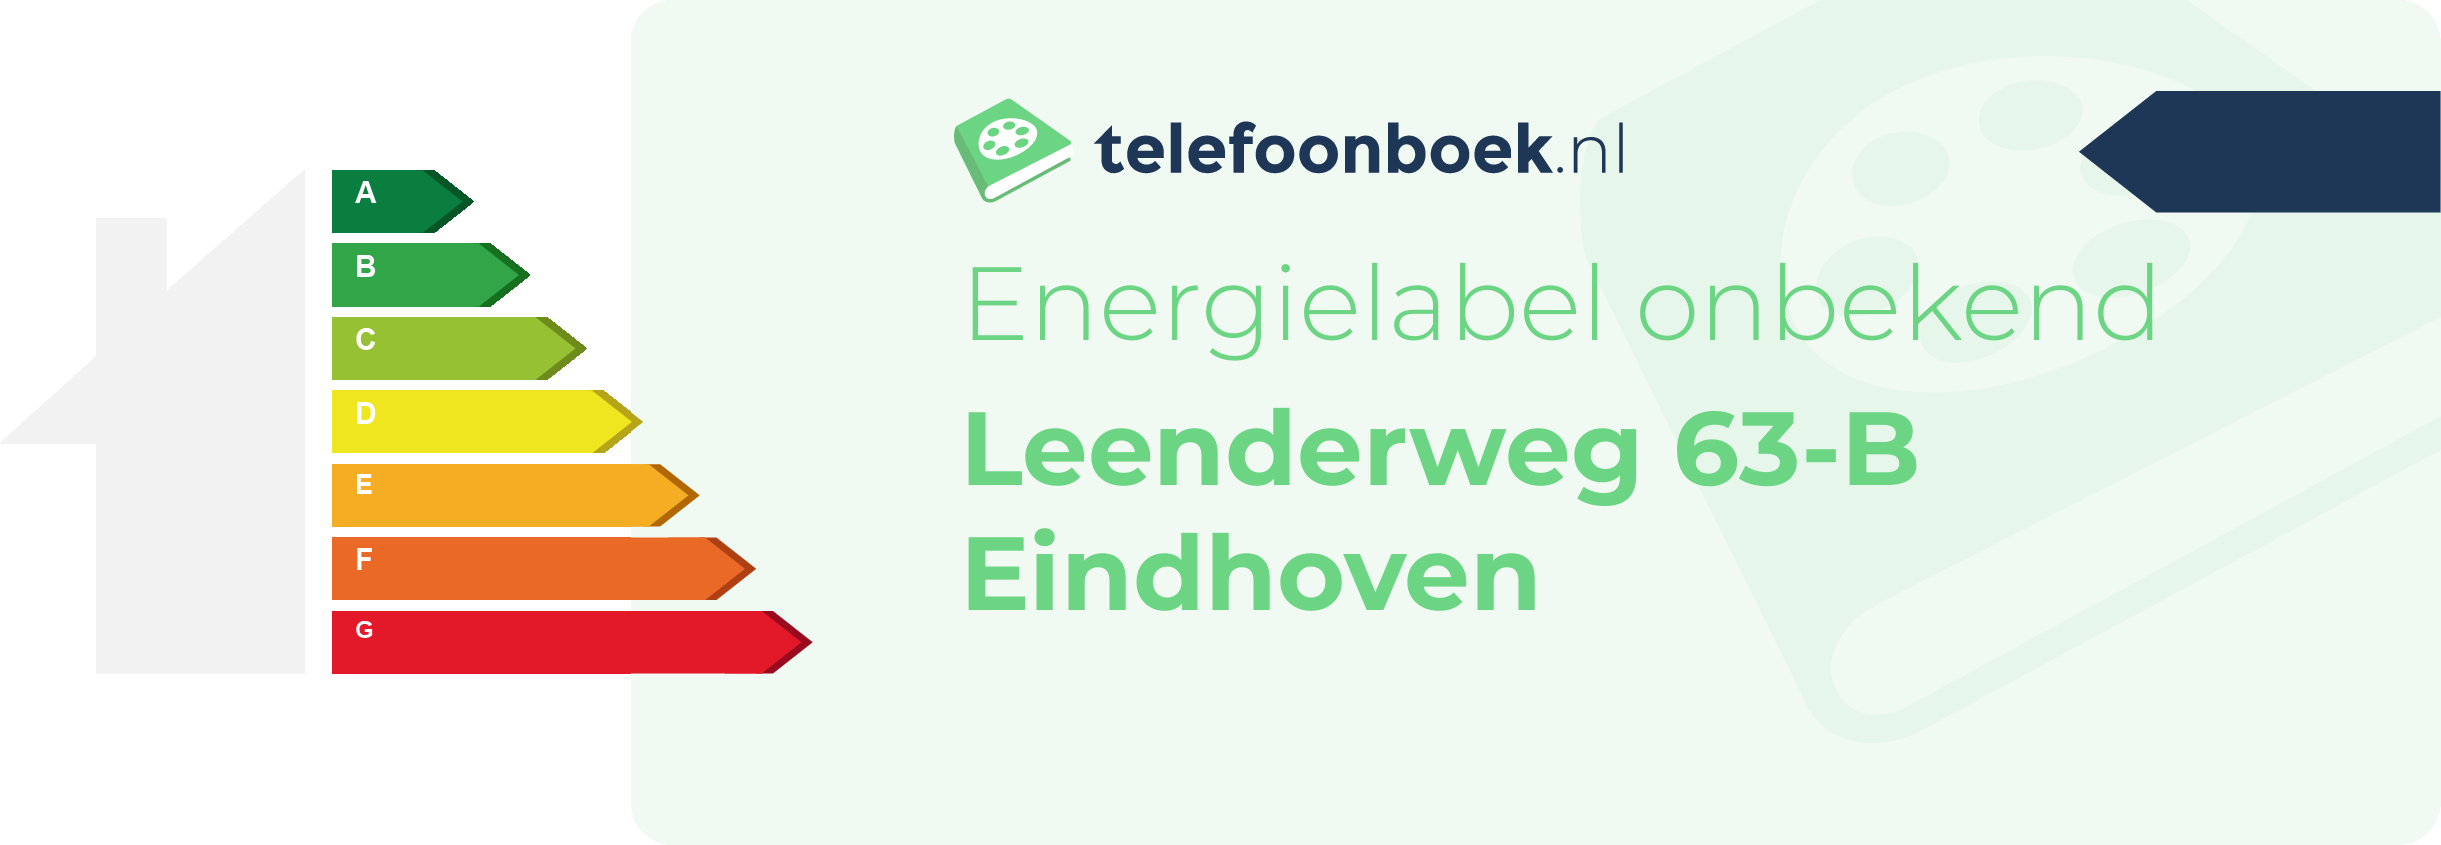 Energielabel Leenderweg 63-B Eindhoven